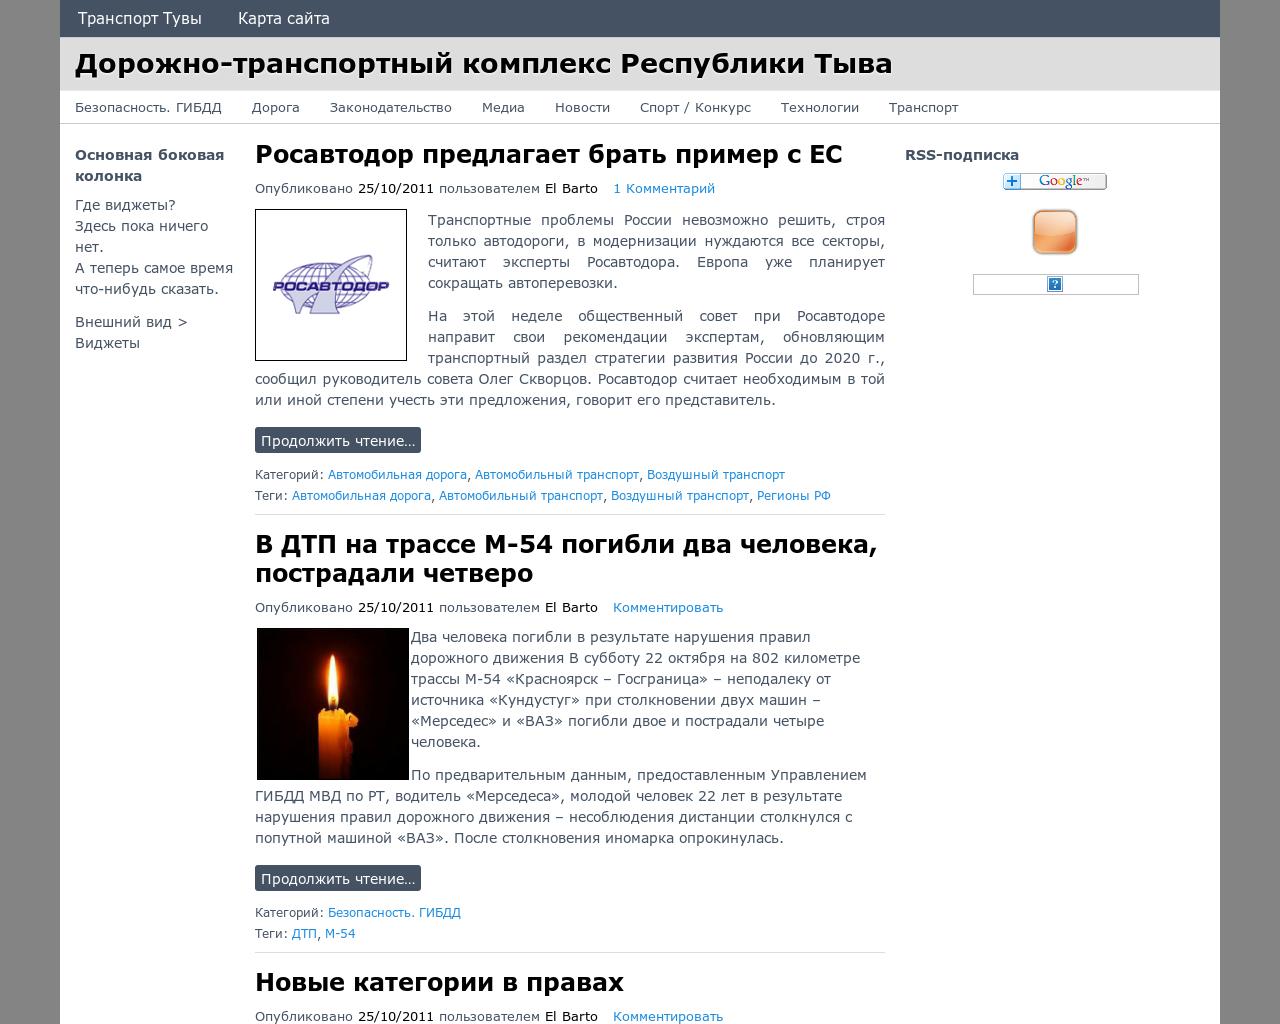 Изображение сайта dtktuva.ru в разрешении 1280x1024